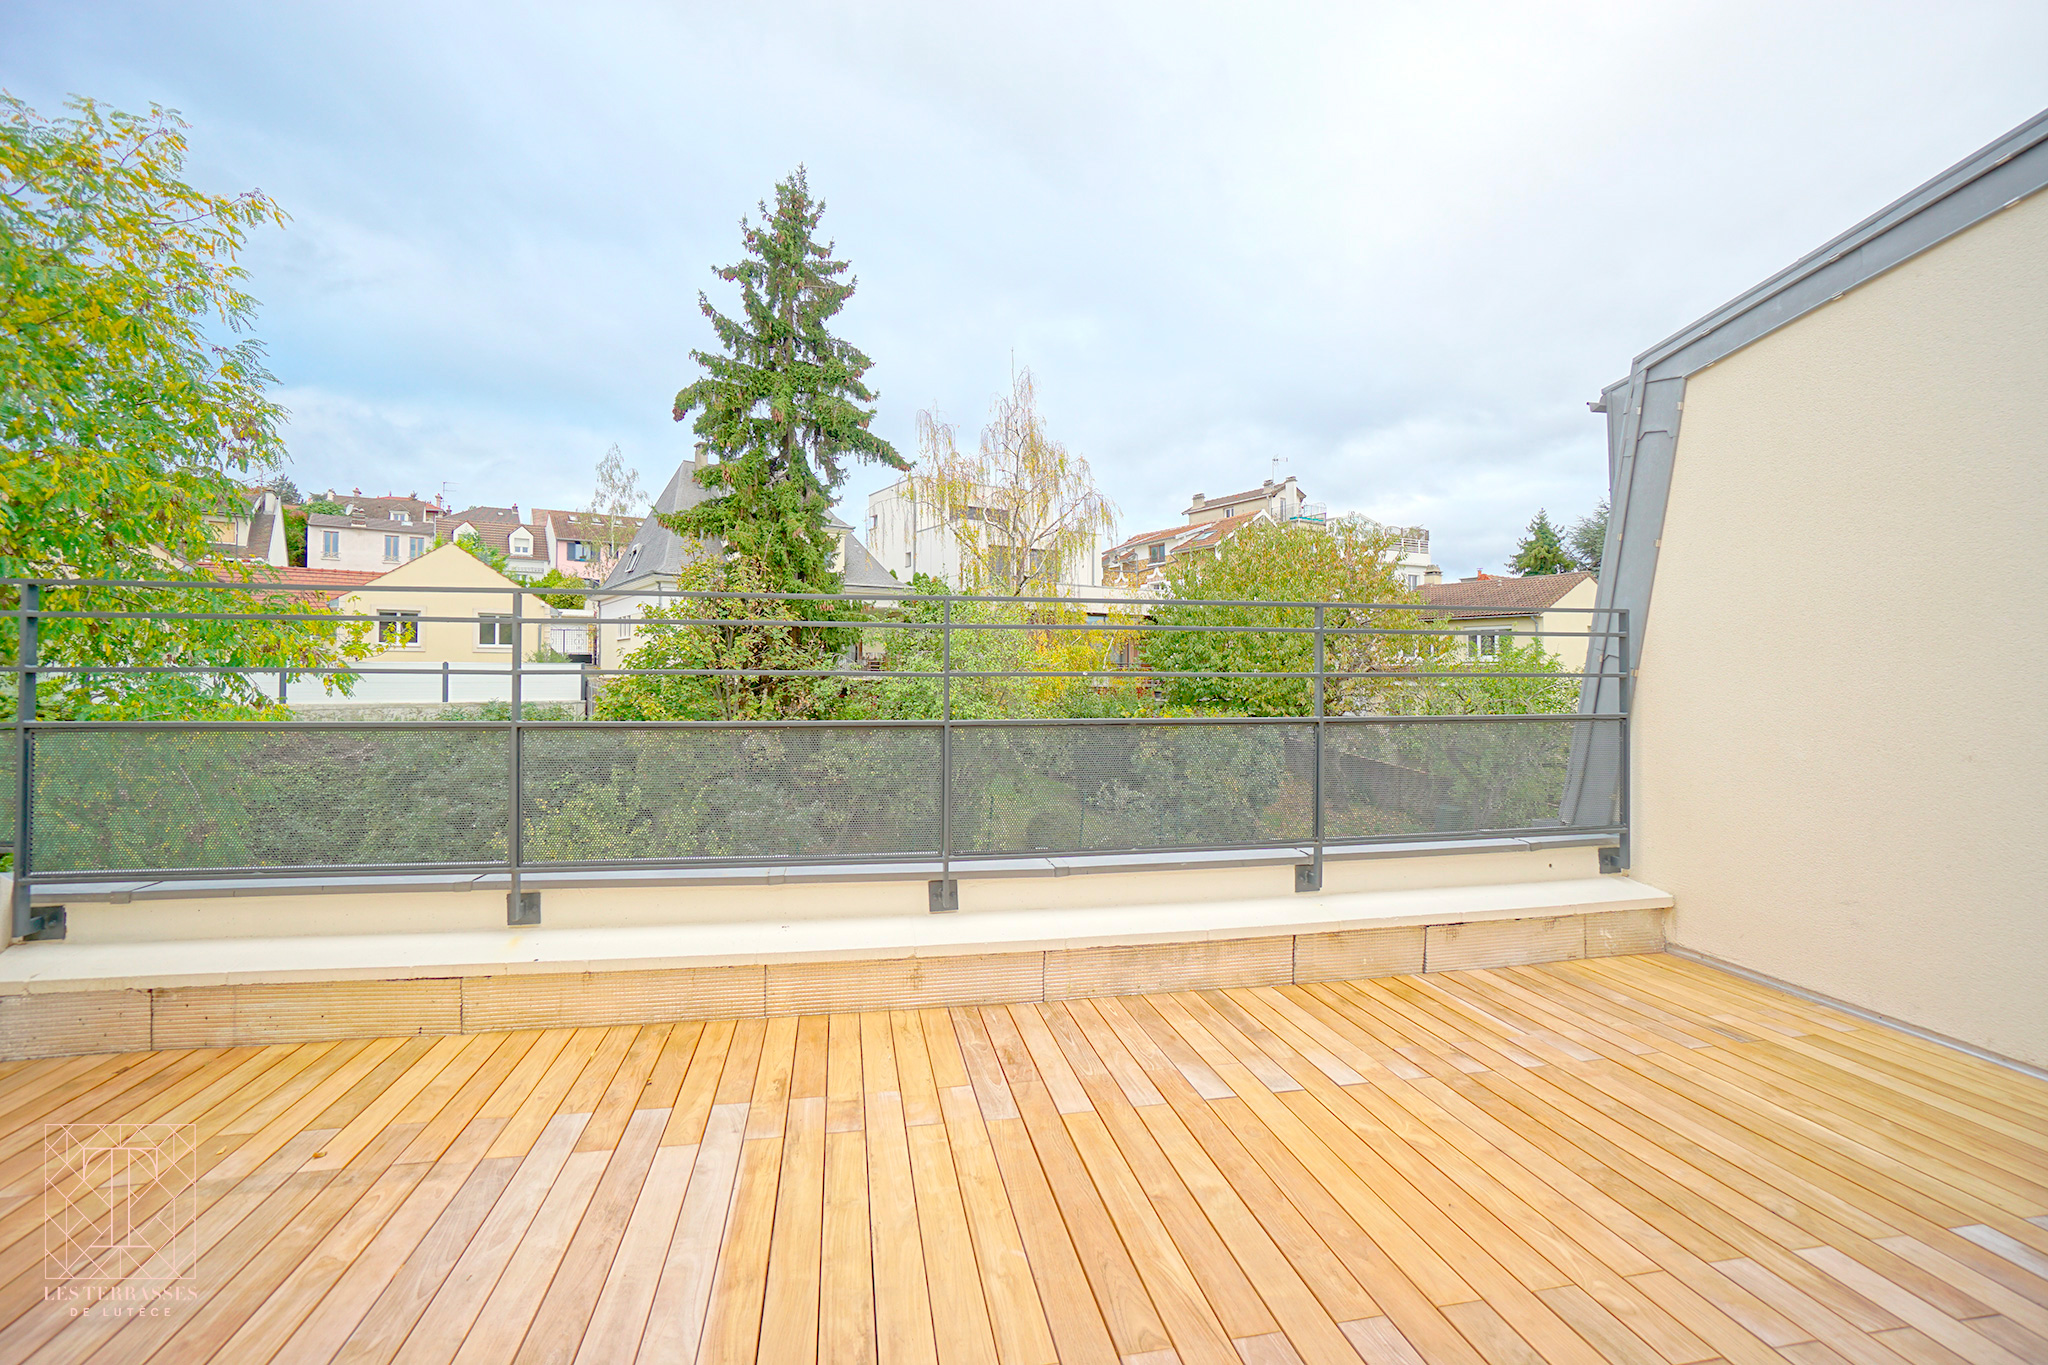 Photo n°1 du bien immobilier Meudon : Appartement 5 pièces duplex en dernier étage avec terrasse